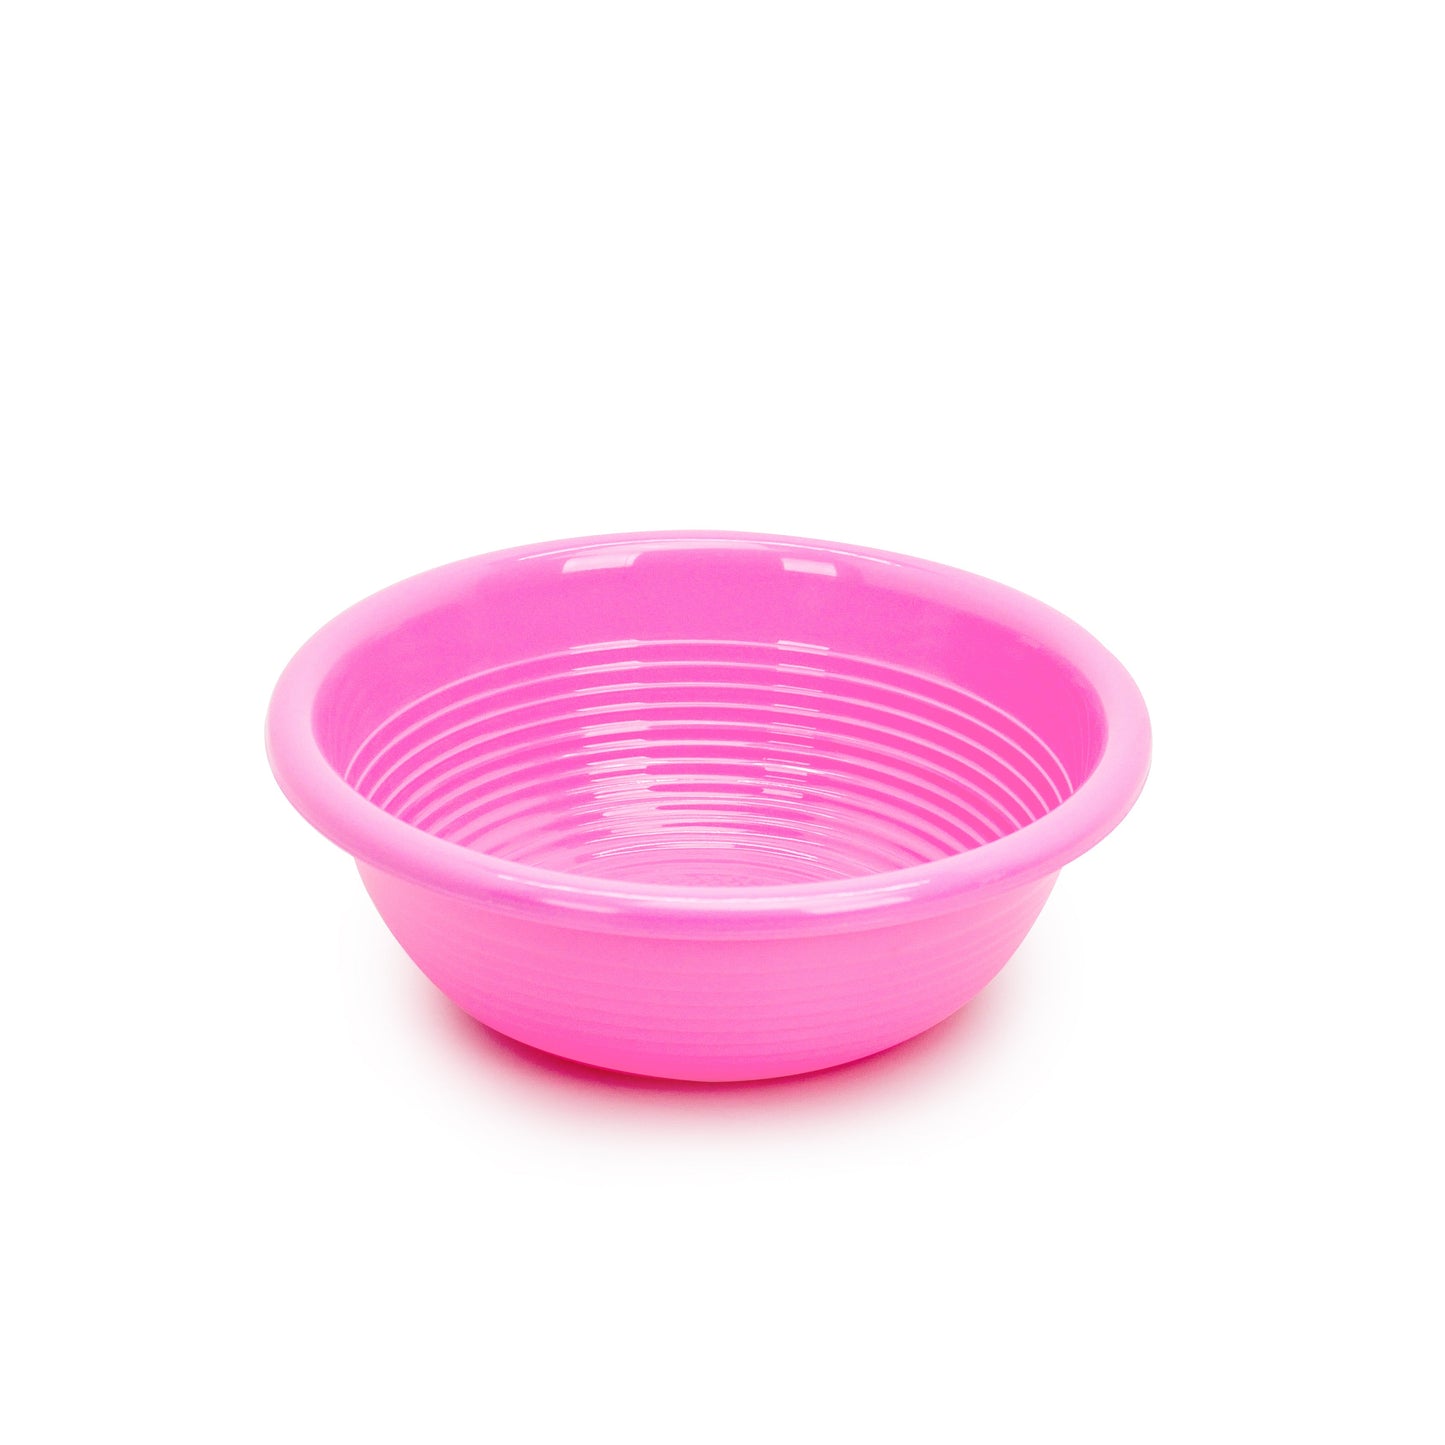 플라스틱 욕실/세척바구니 (중) 핑크